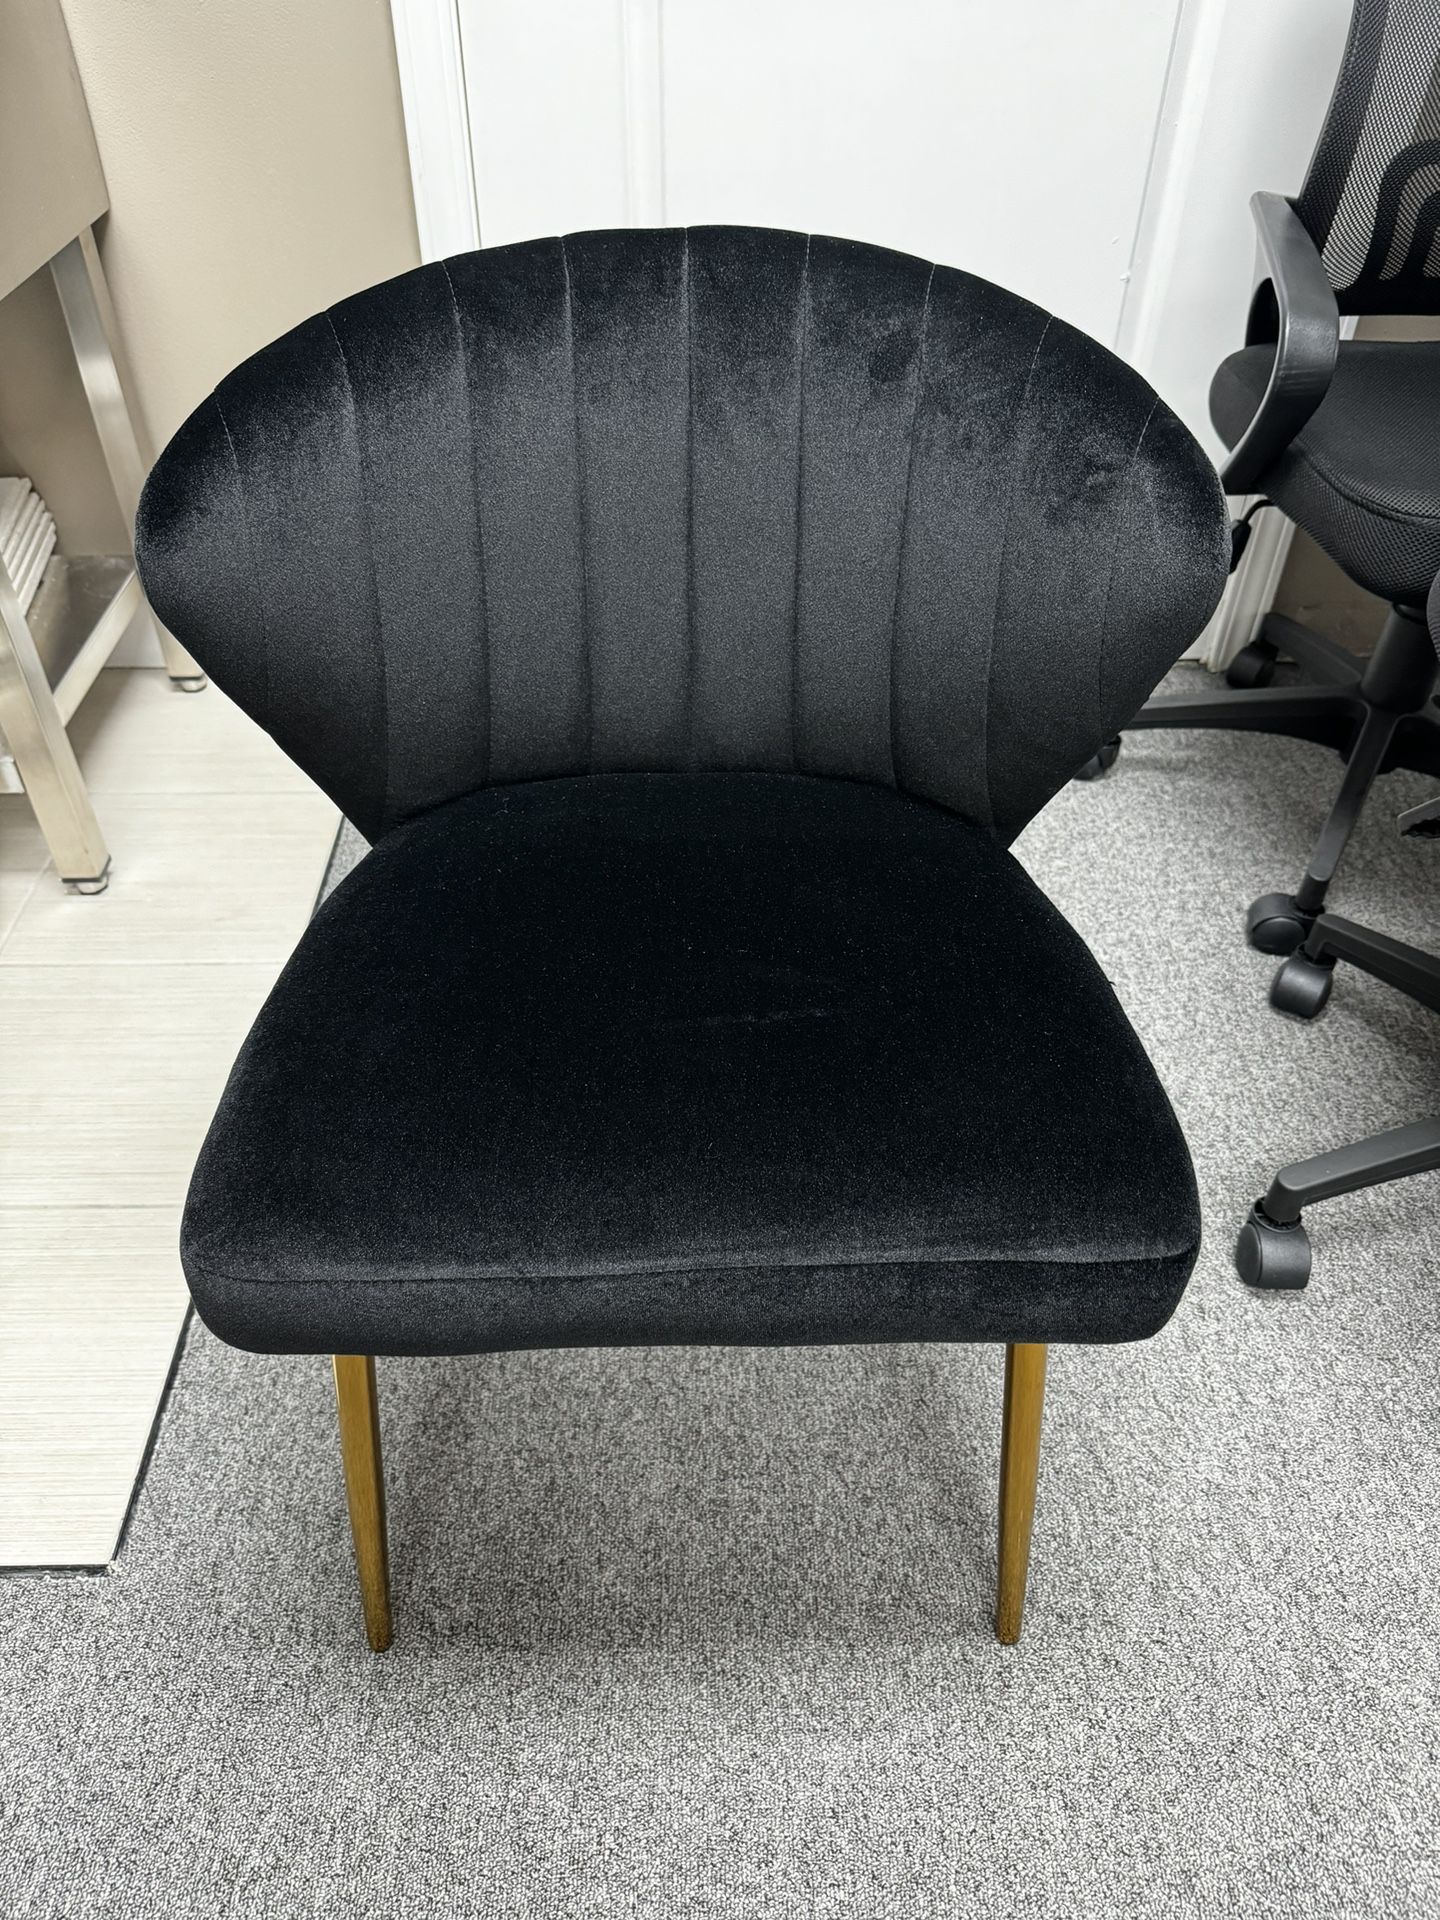 2 Black Velvet Chairs  Brand New